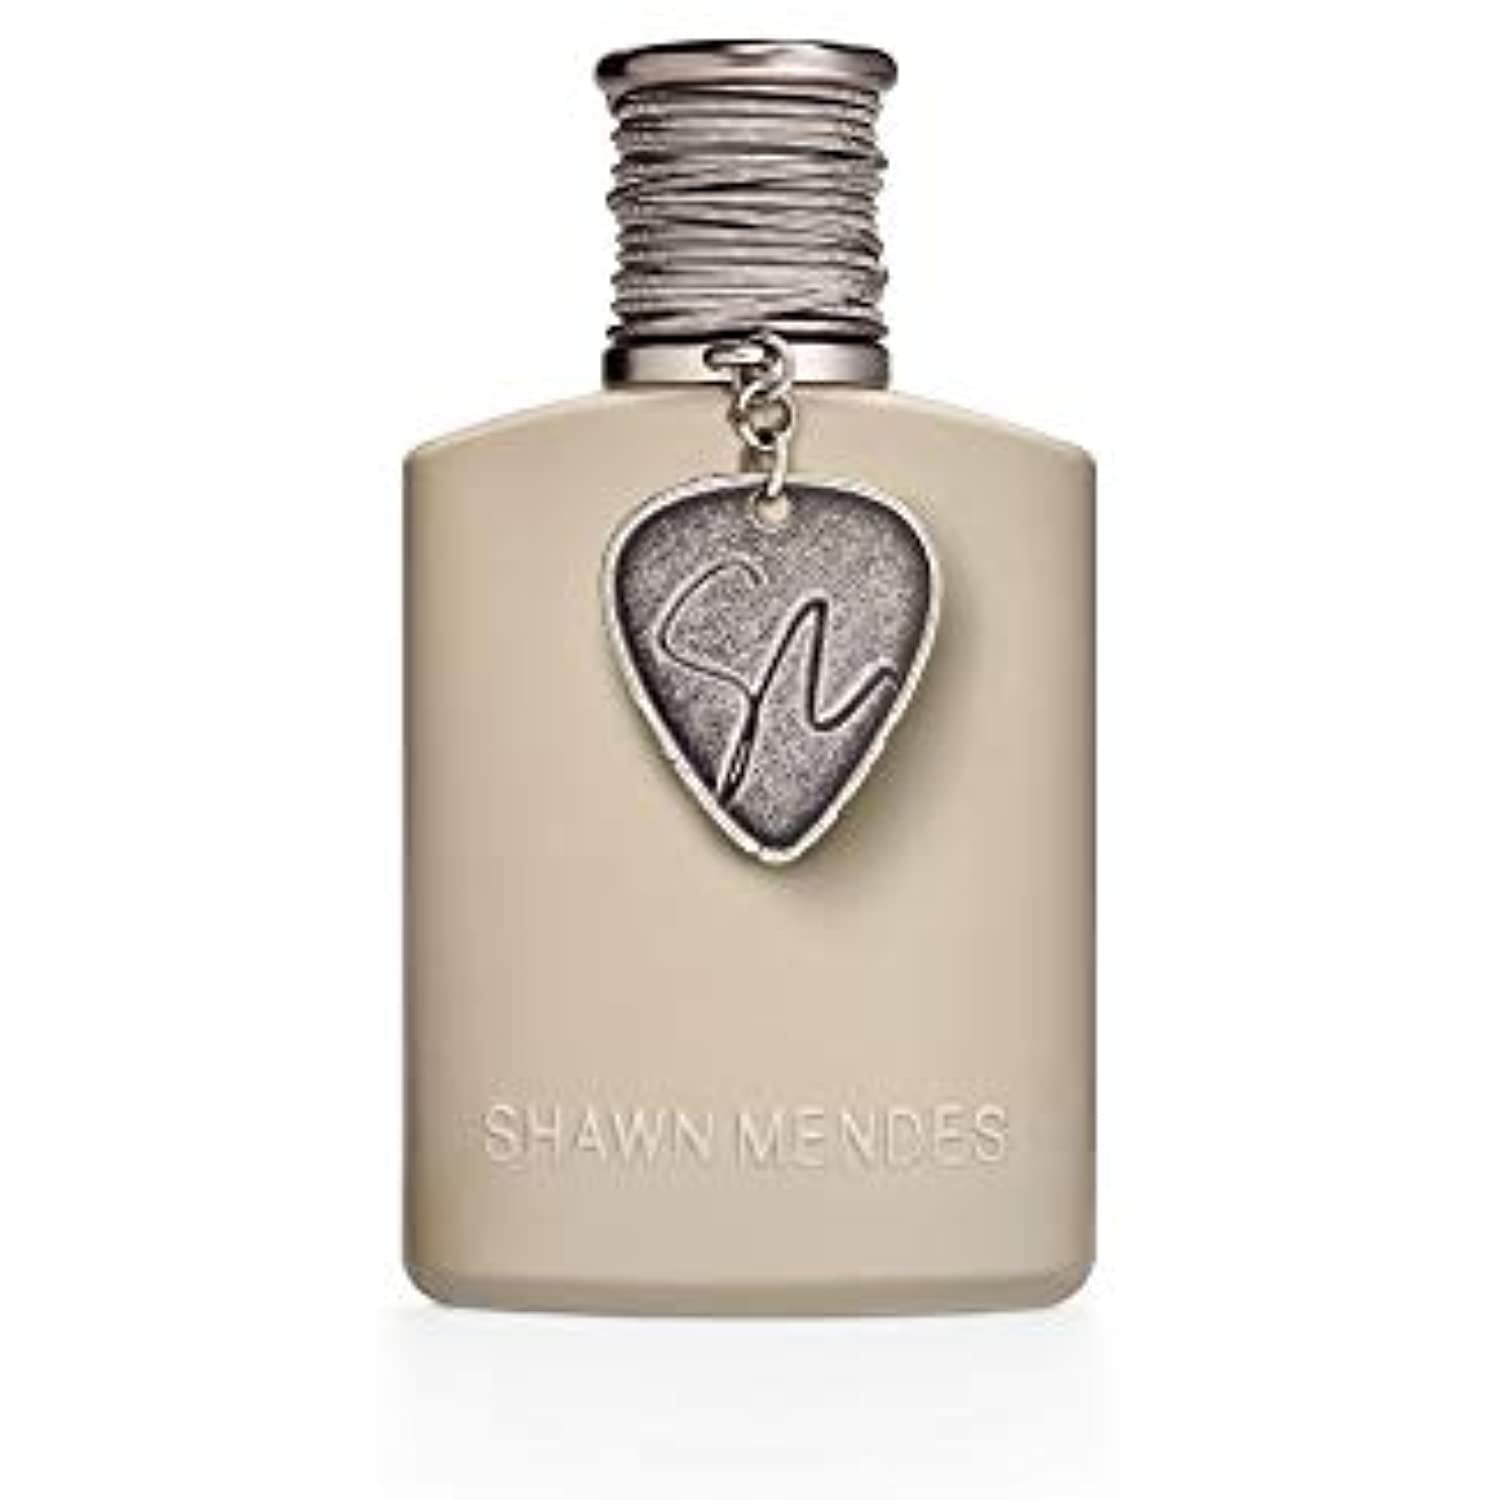 Shawn Mendes Signature II Eau de Parfum Fragrance Spray for Women and Men,  1.7 fl oz